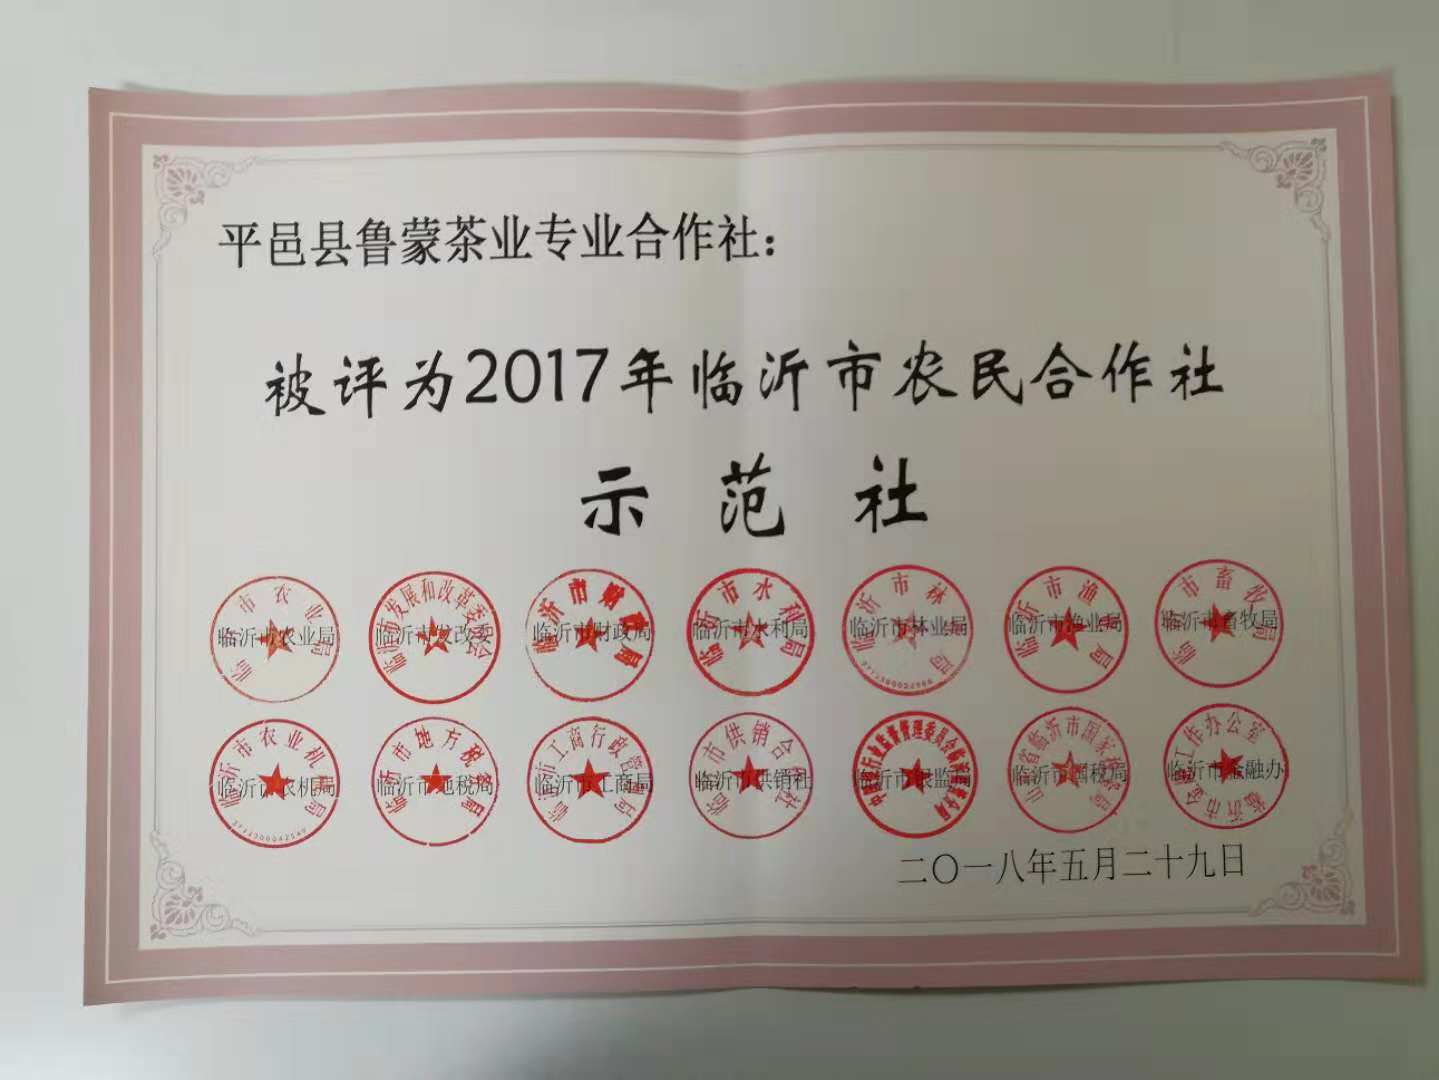 被评为2017年临沂市农民合作社示范社